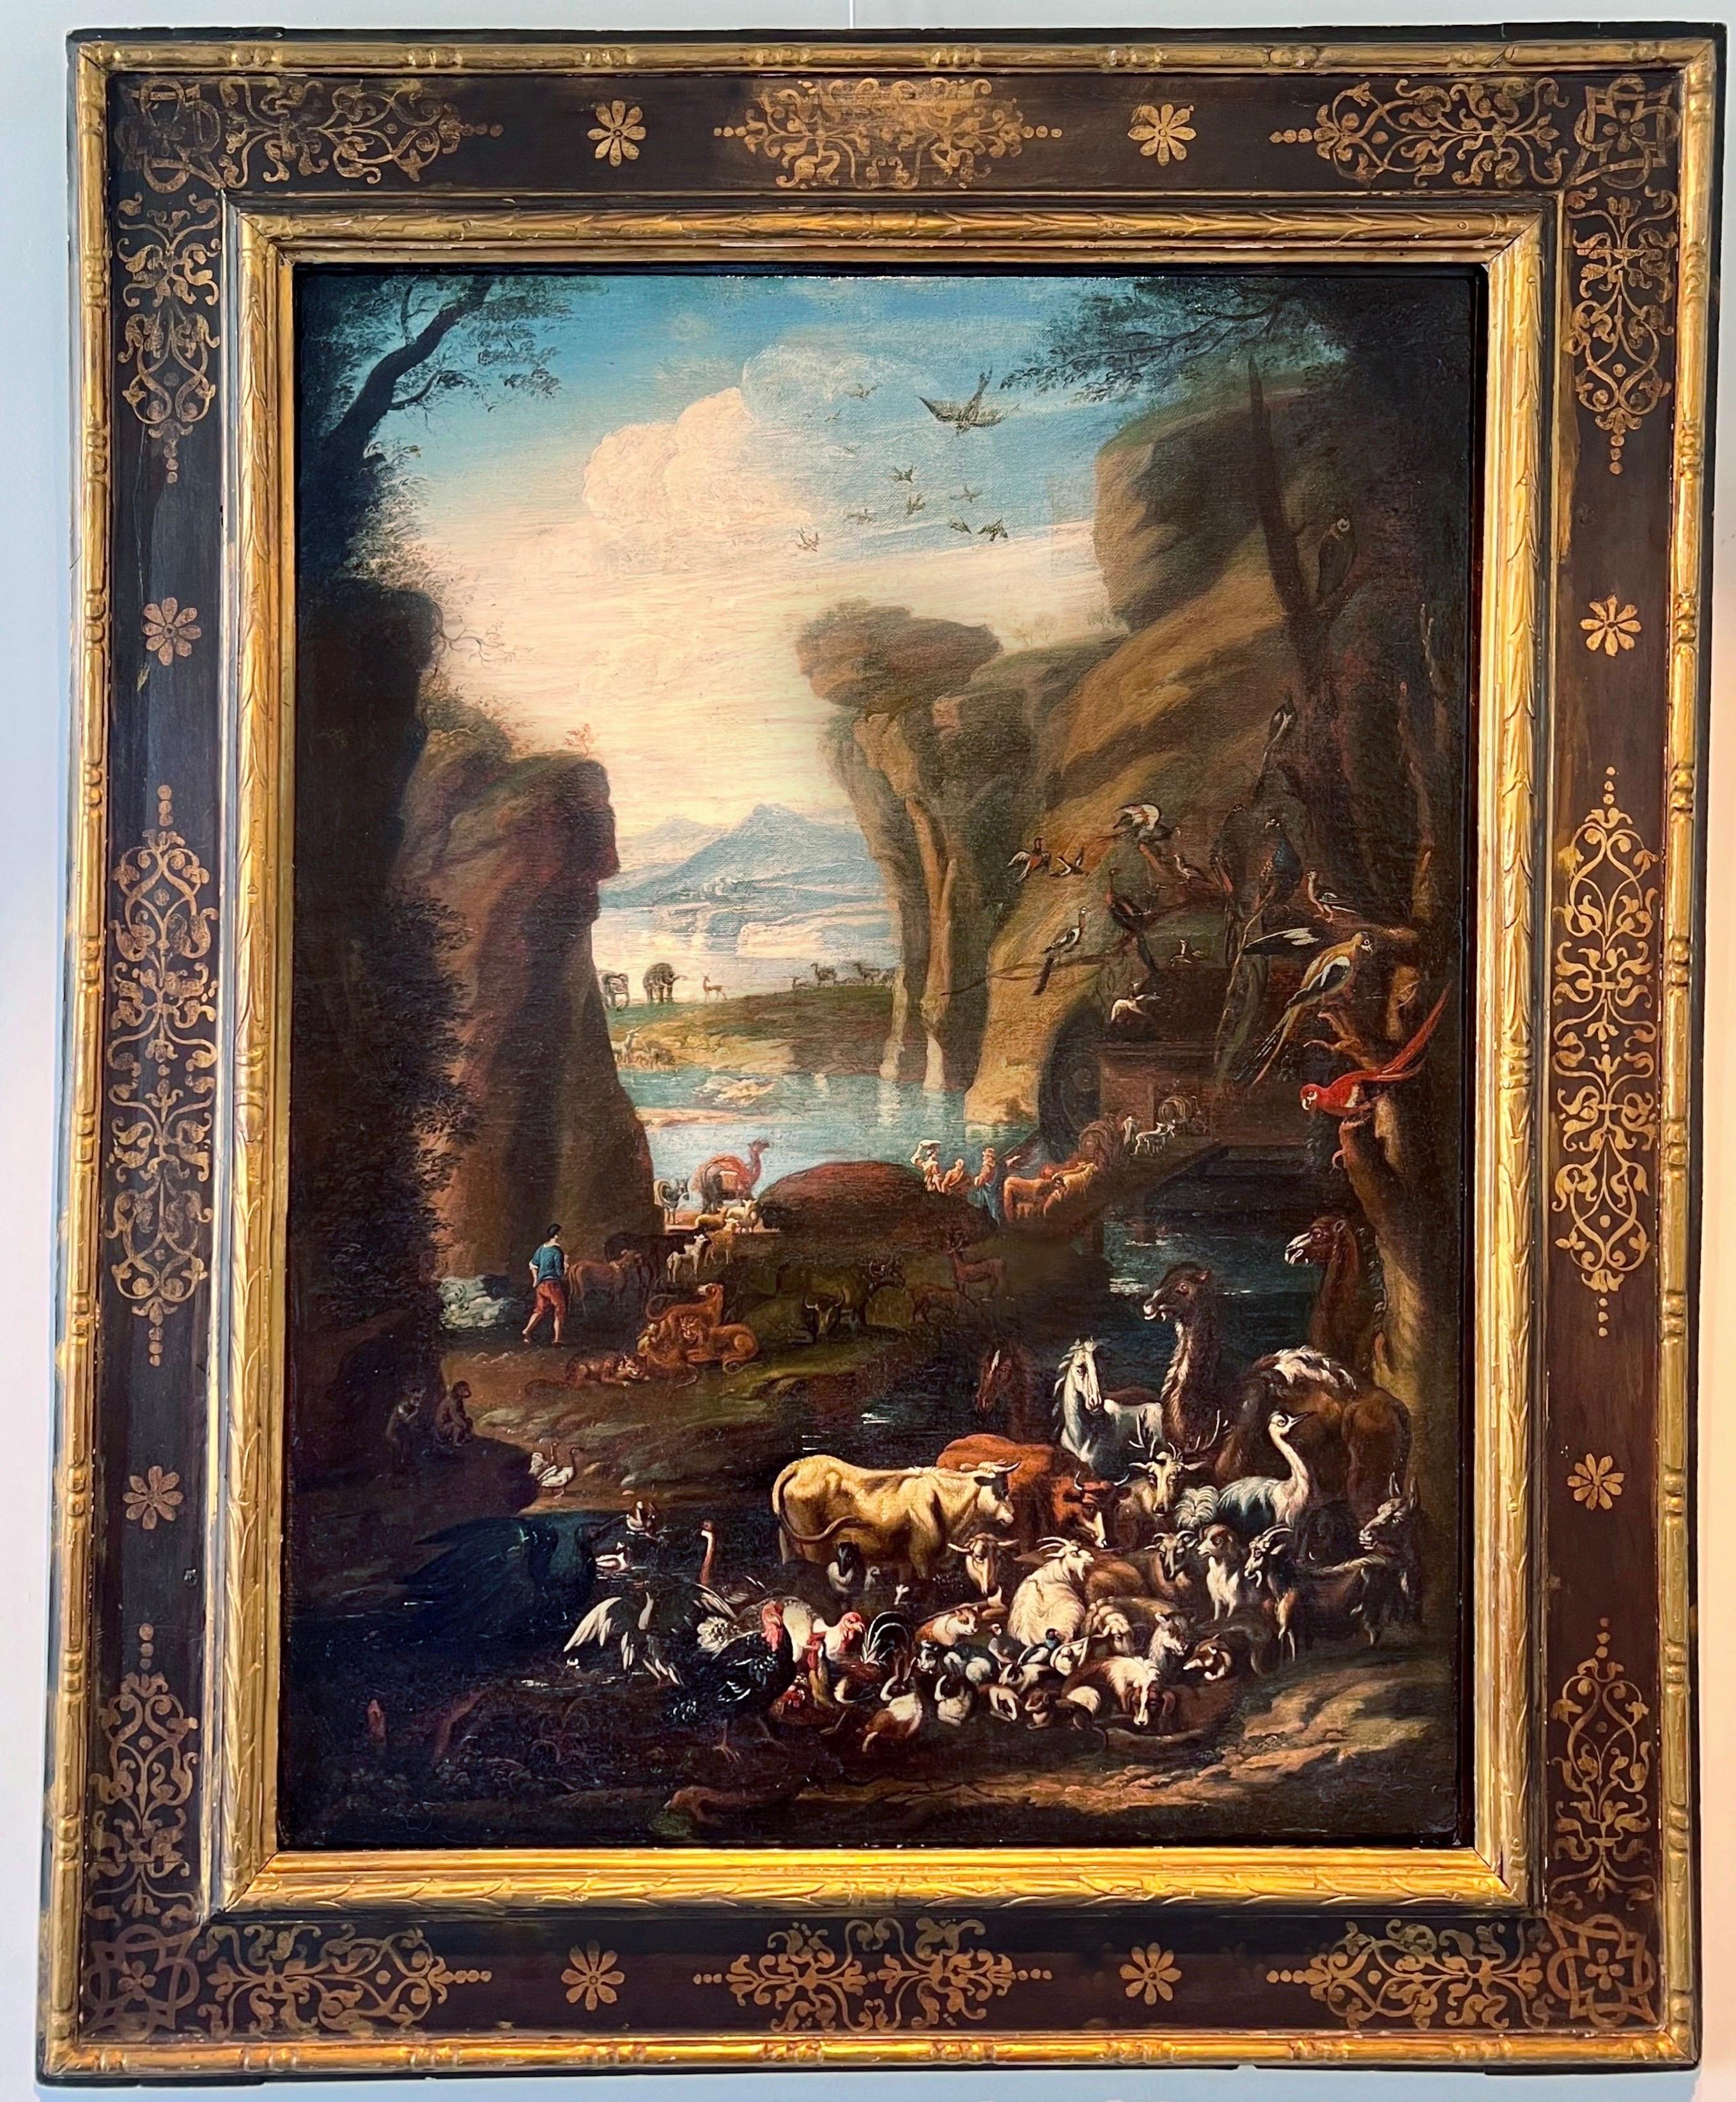 Großes italienisches Gemälde des 17. / 18. Jahrhunderts - Tiere, die Noahs Arktis eintreten 